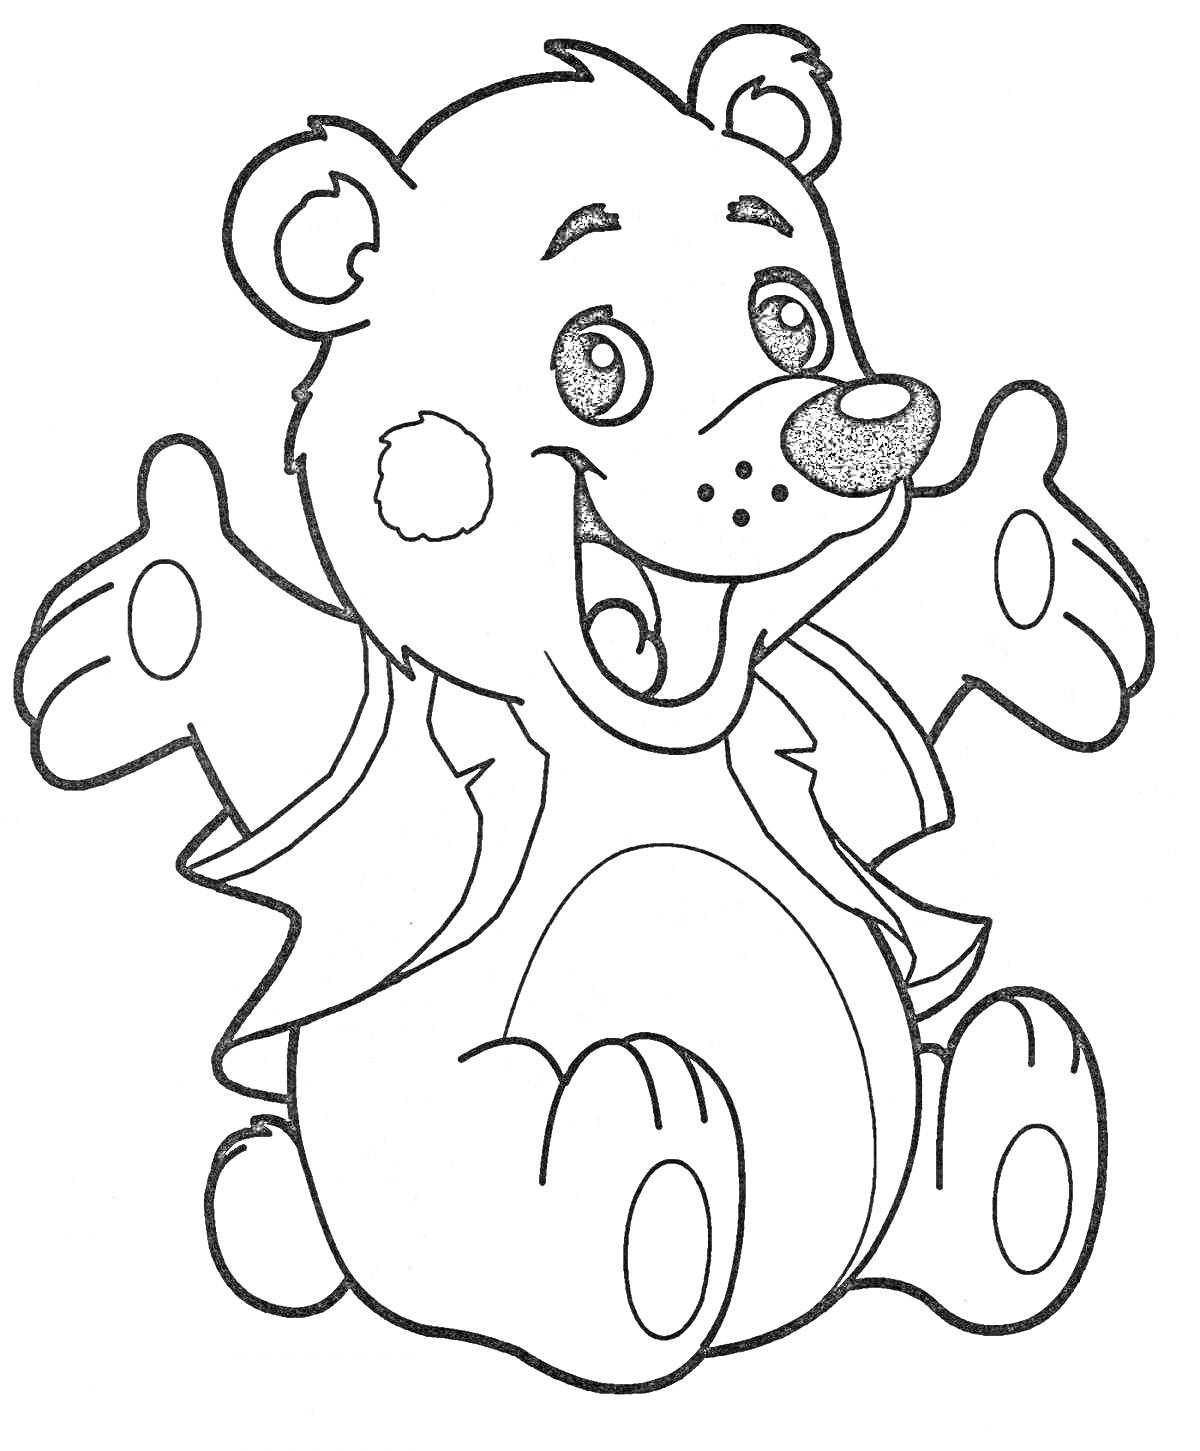 Раскраска Медвежонок с улыбкой в сидячей позе, со взмахом лап, с ушами, носом и щечками